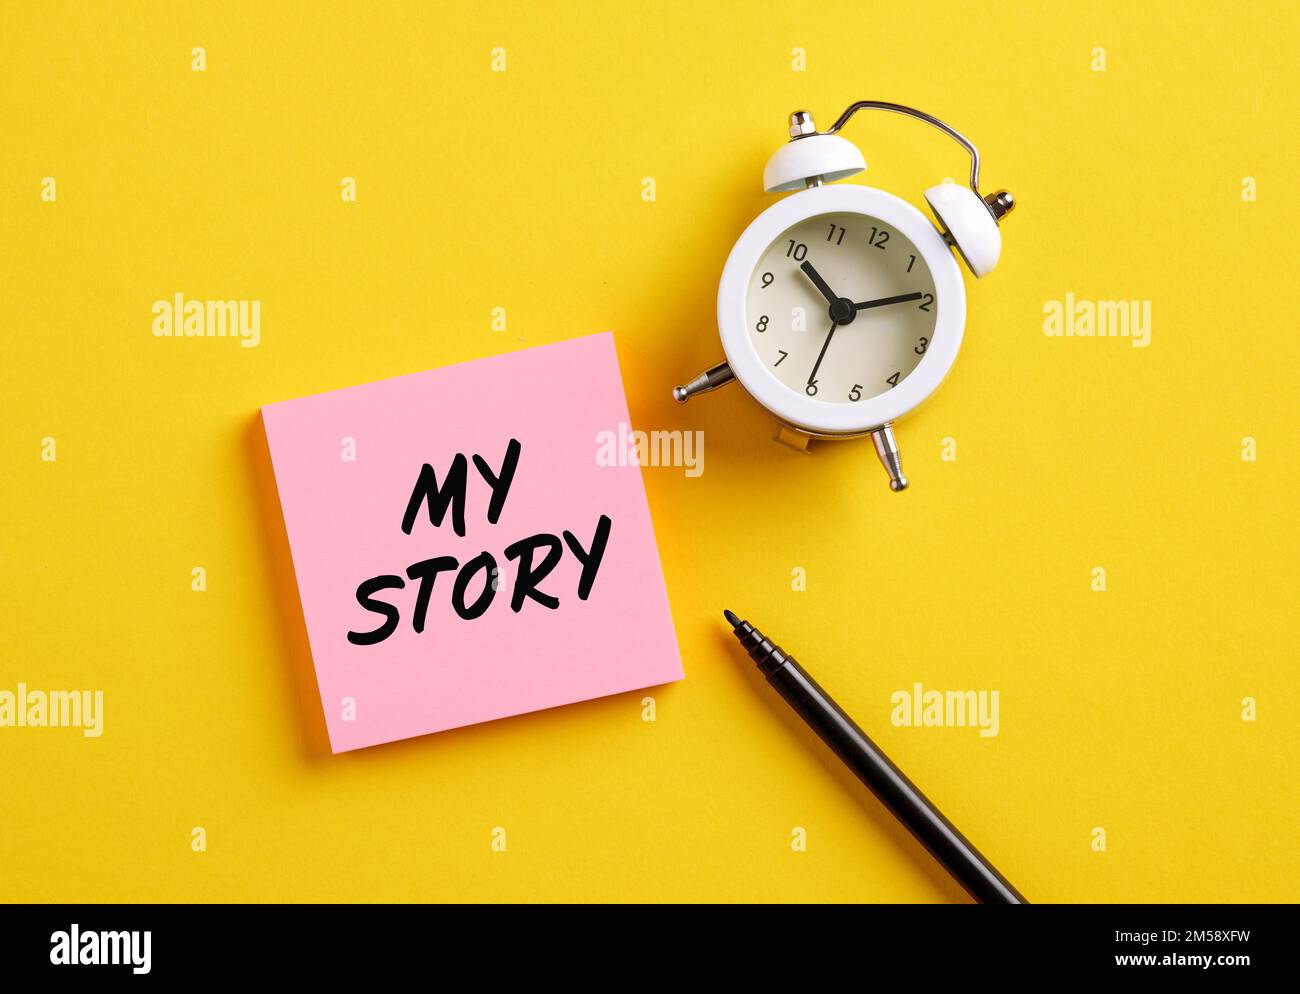 Meine Story auf pinkfarbenem Zettel mit Wecker und Stift. Persönliche Lebensgeschichte oder persönliche Karriere für das Geschäftskonzept. Stockfoto